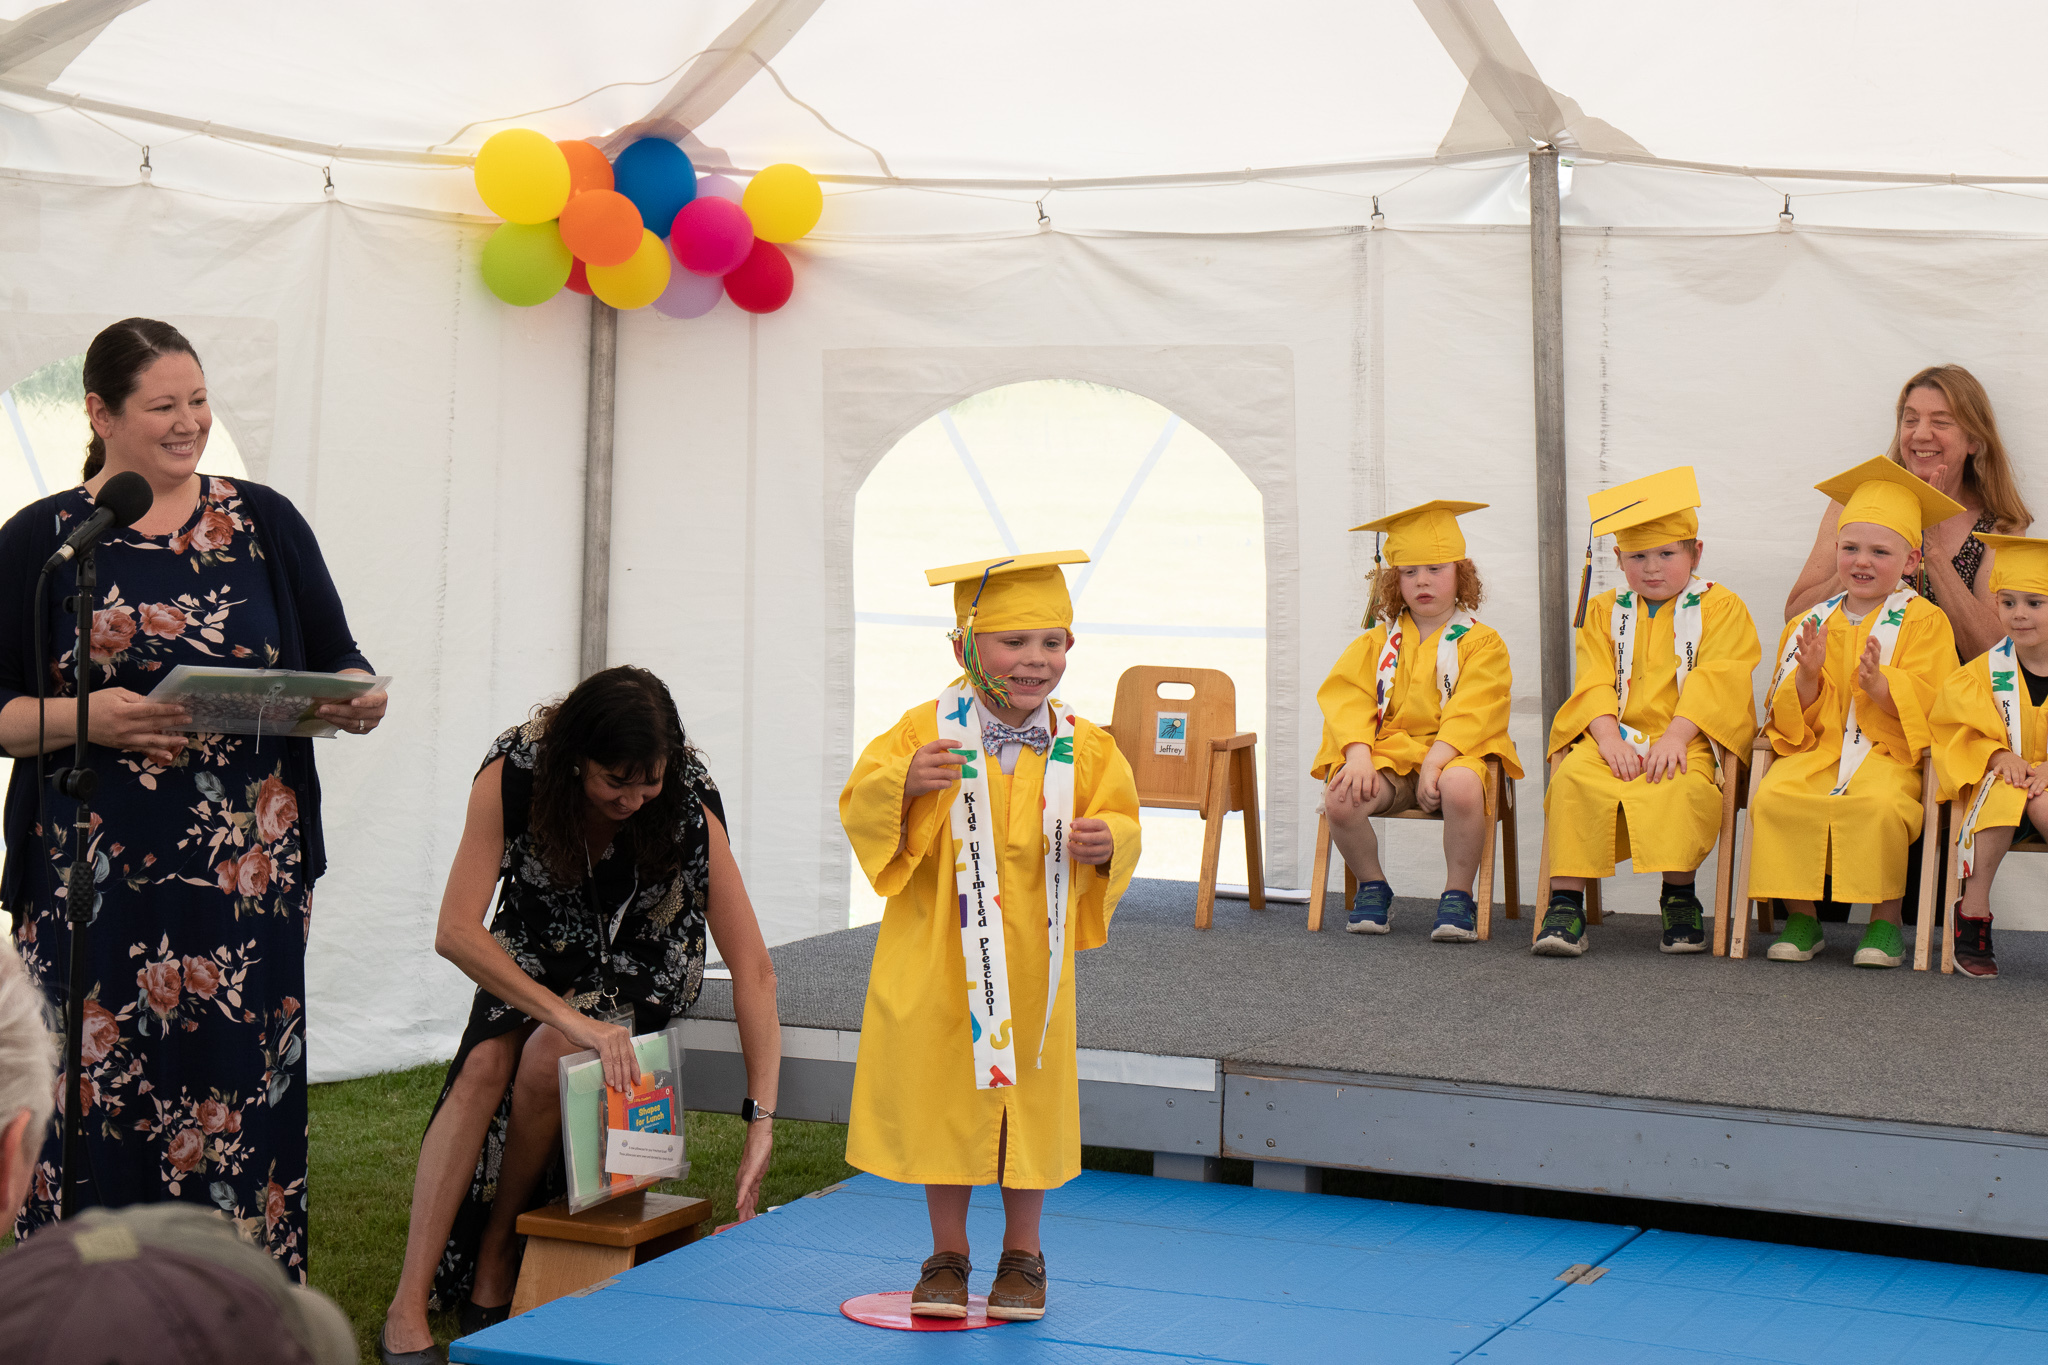 MG 6608 - Congratulations to the 2022 Kids Unlimited Preschool Graduates!